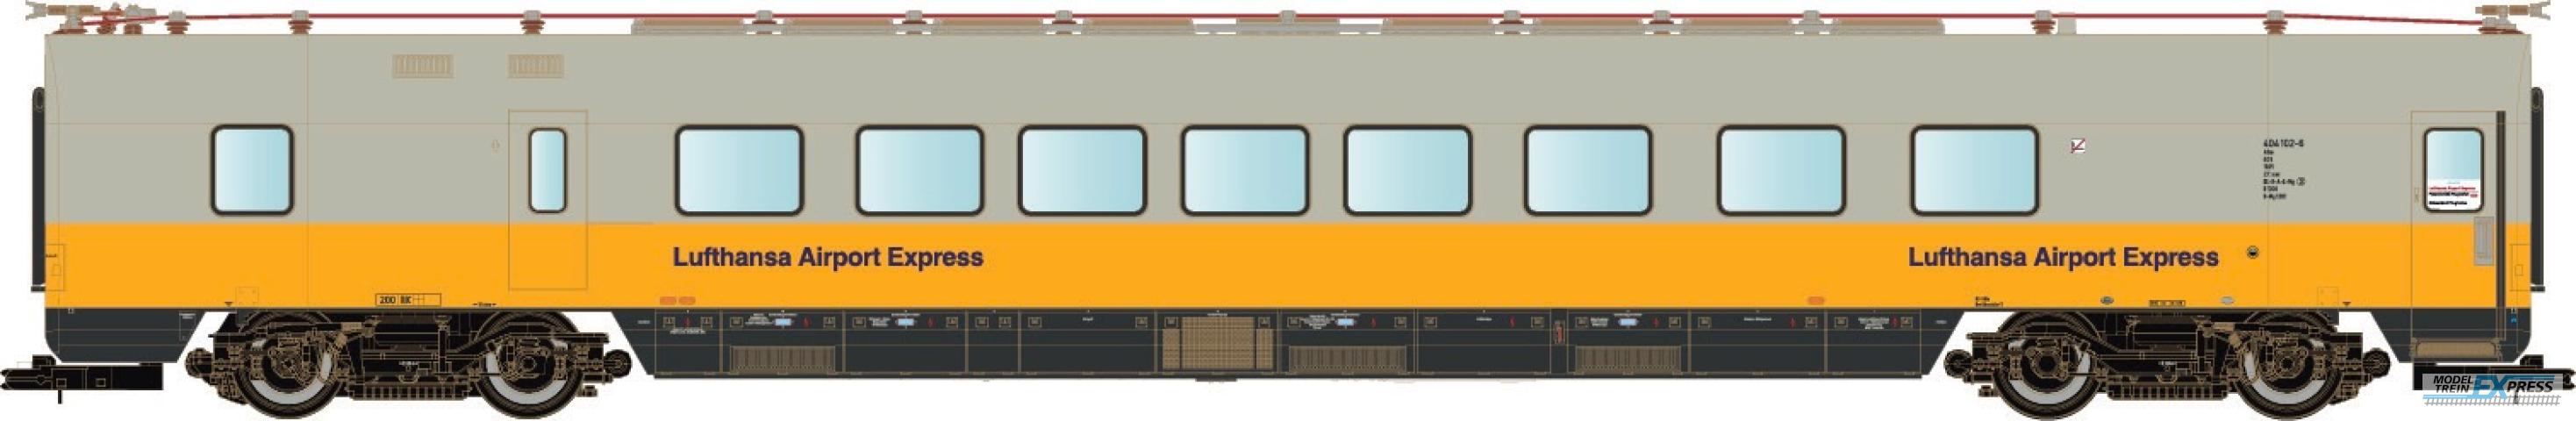 LS Models 16007 ET 403, restauratie-rijtuig, geel/grijs,  Lufthansa Airport Express, versterkingswagen  /  Ep. IVb  /  DB  /  HO  /  DC  /  1 P.